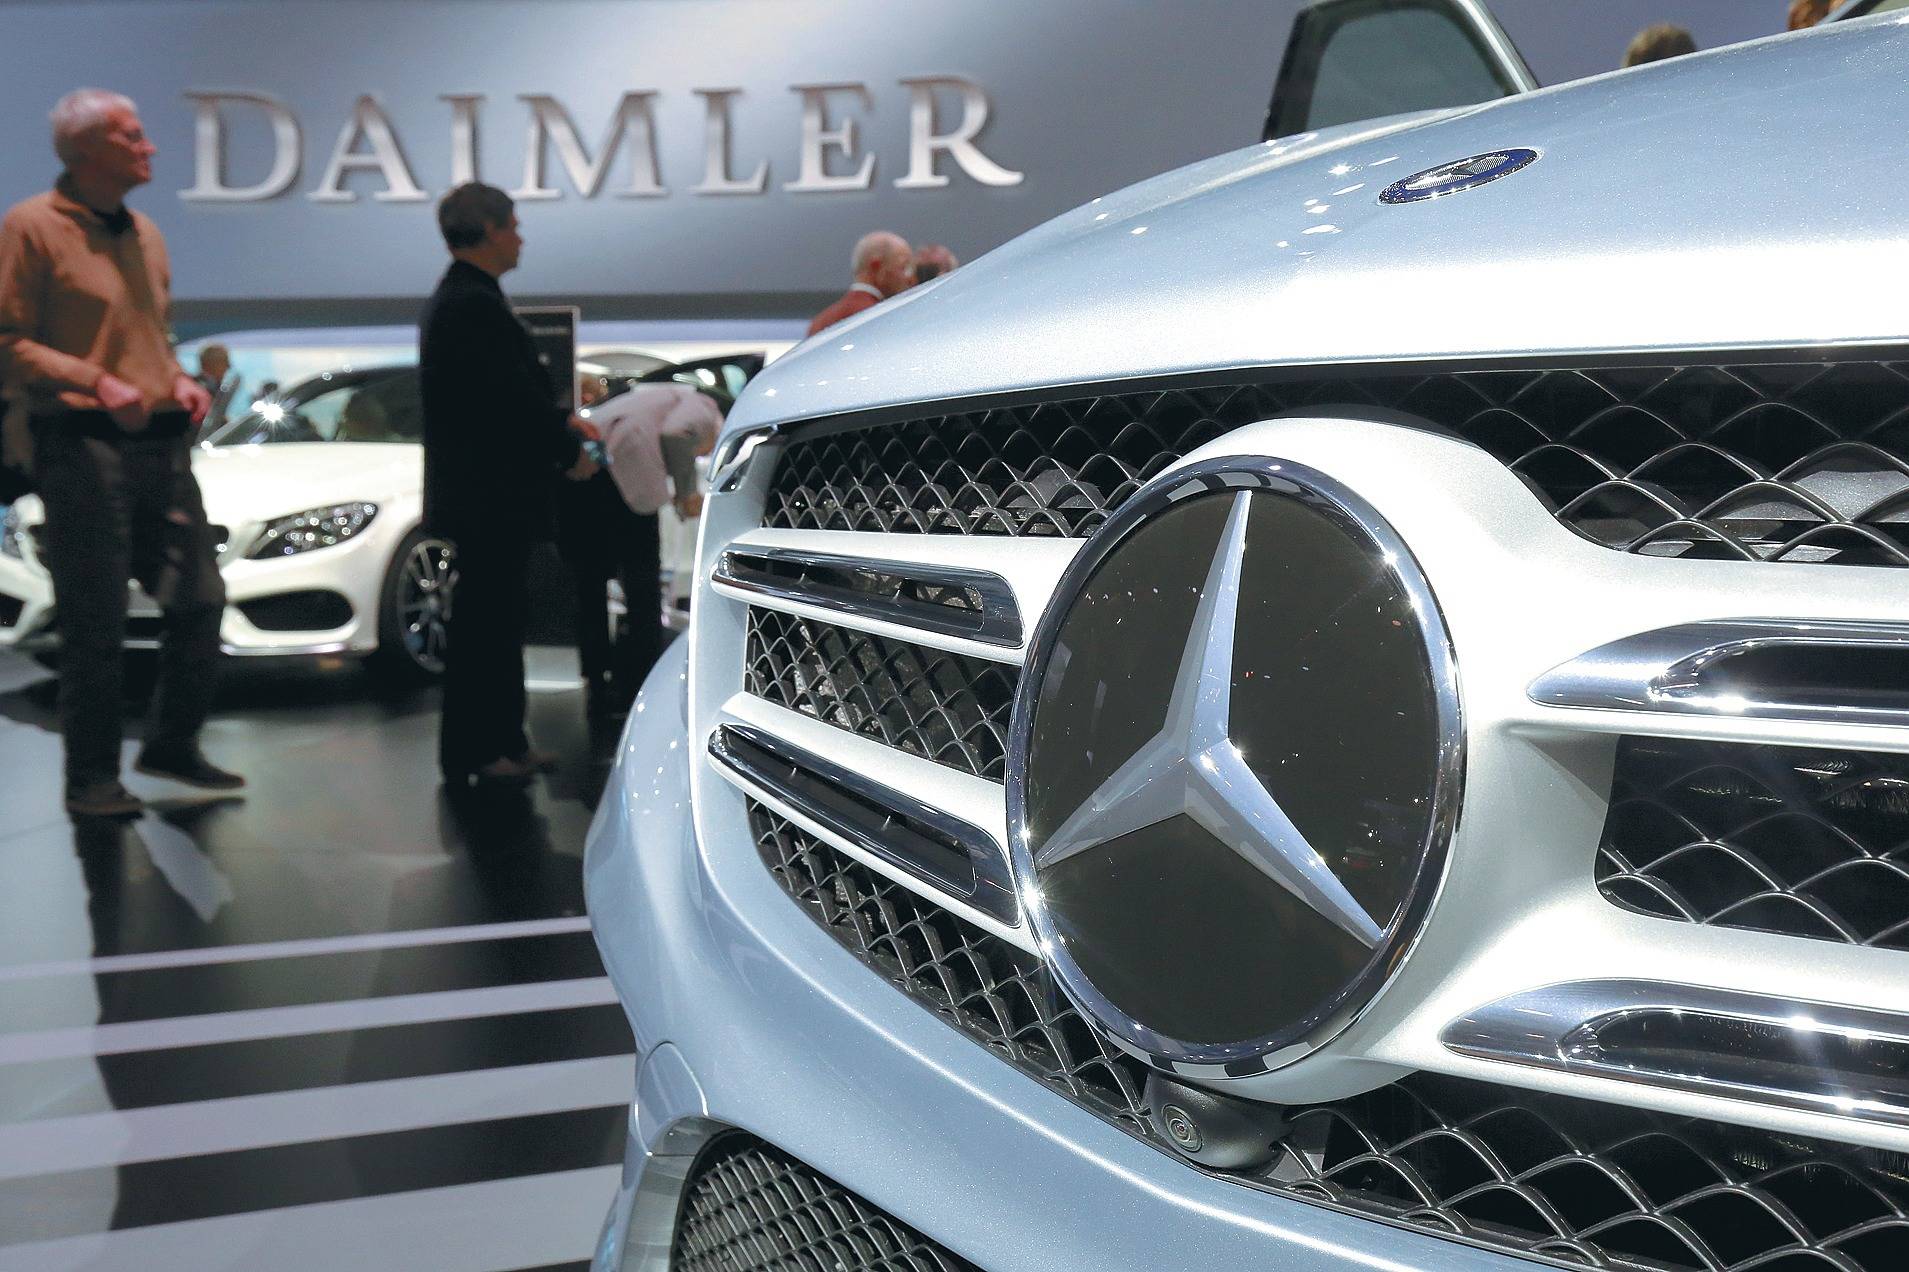 Где собирают мерседес для россии: В России открылся завод легковых автомобилей Mercedes-Benz